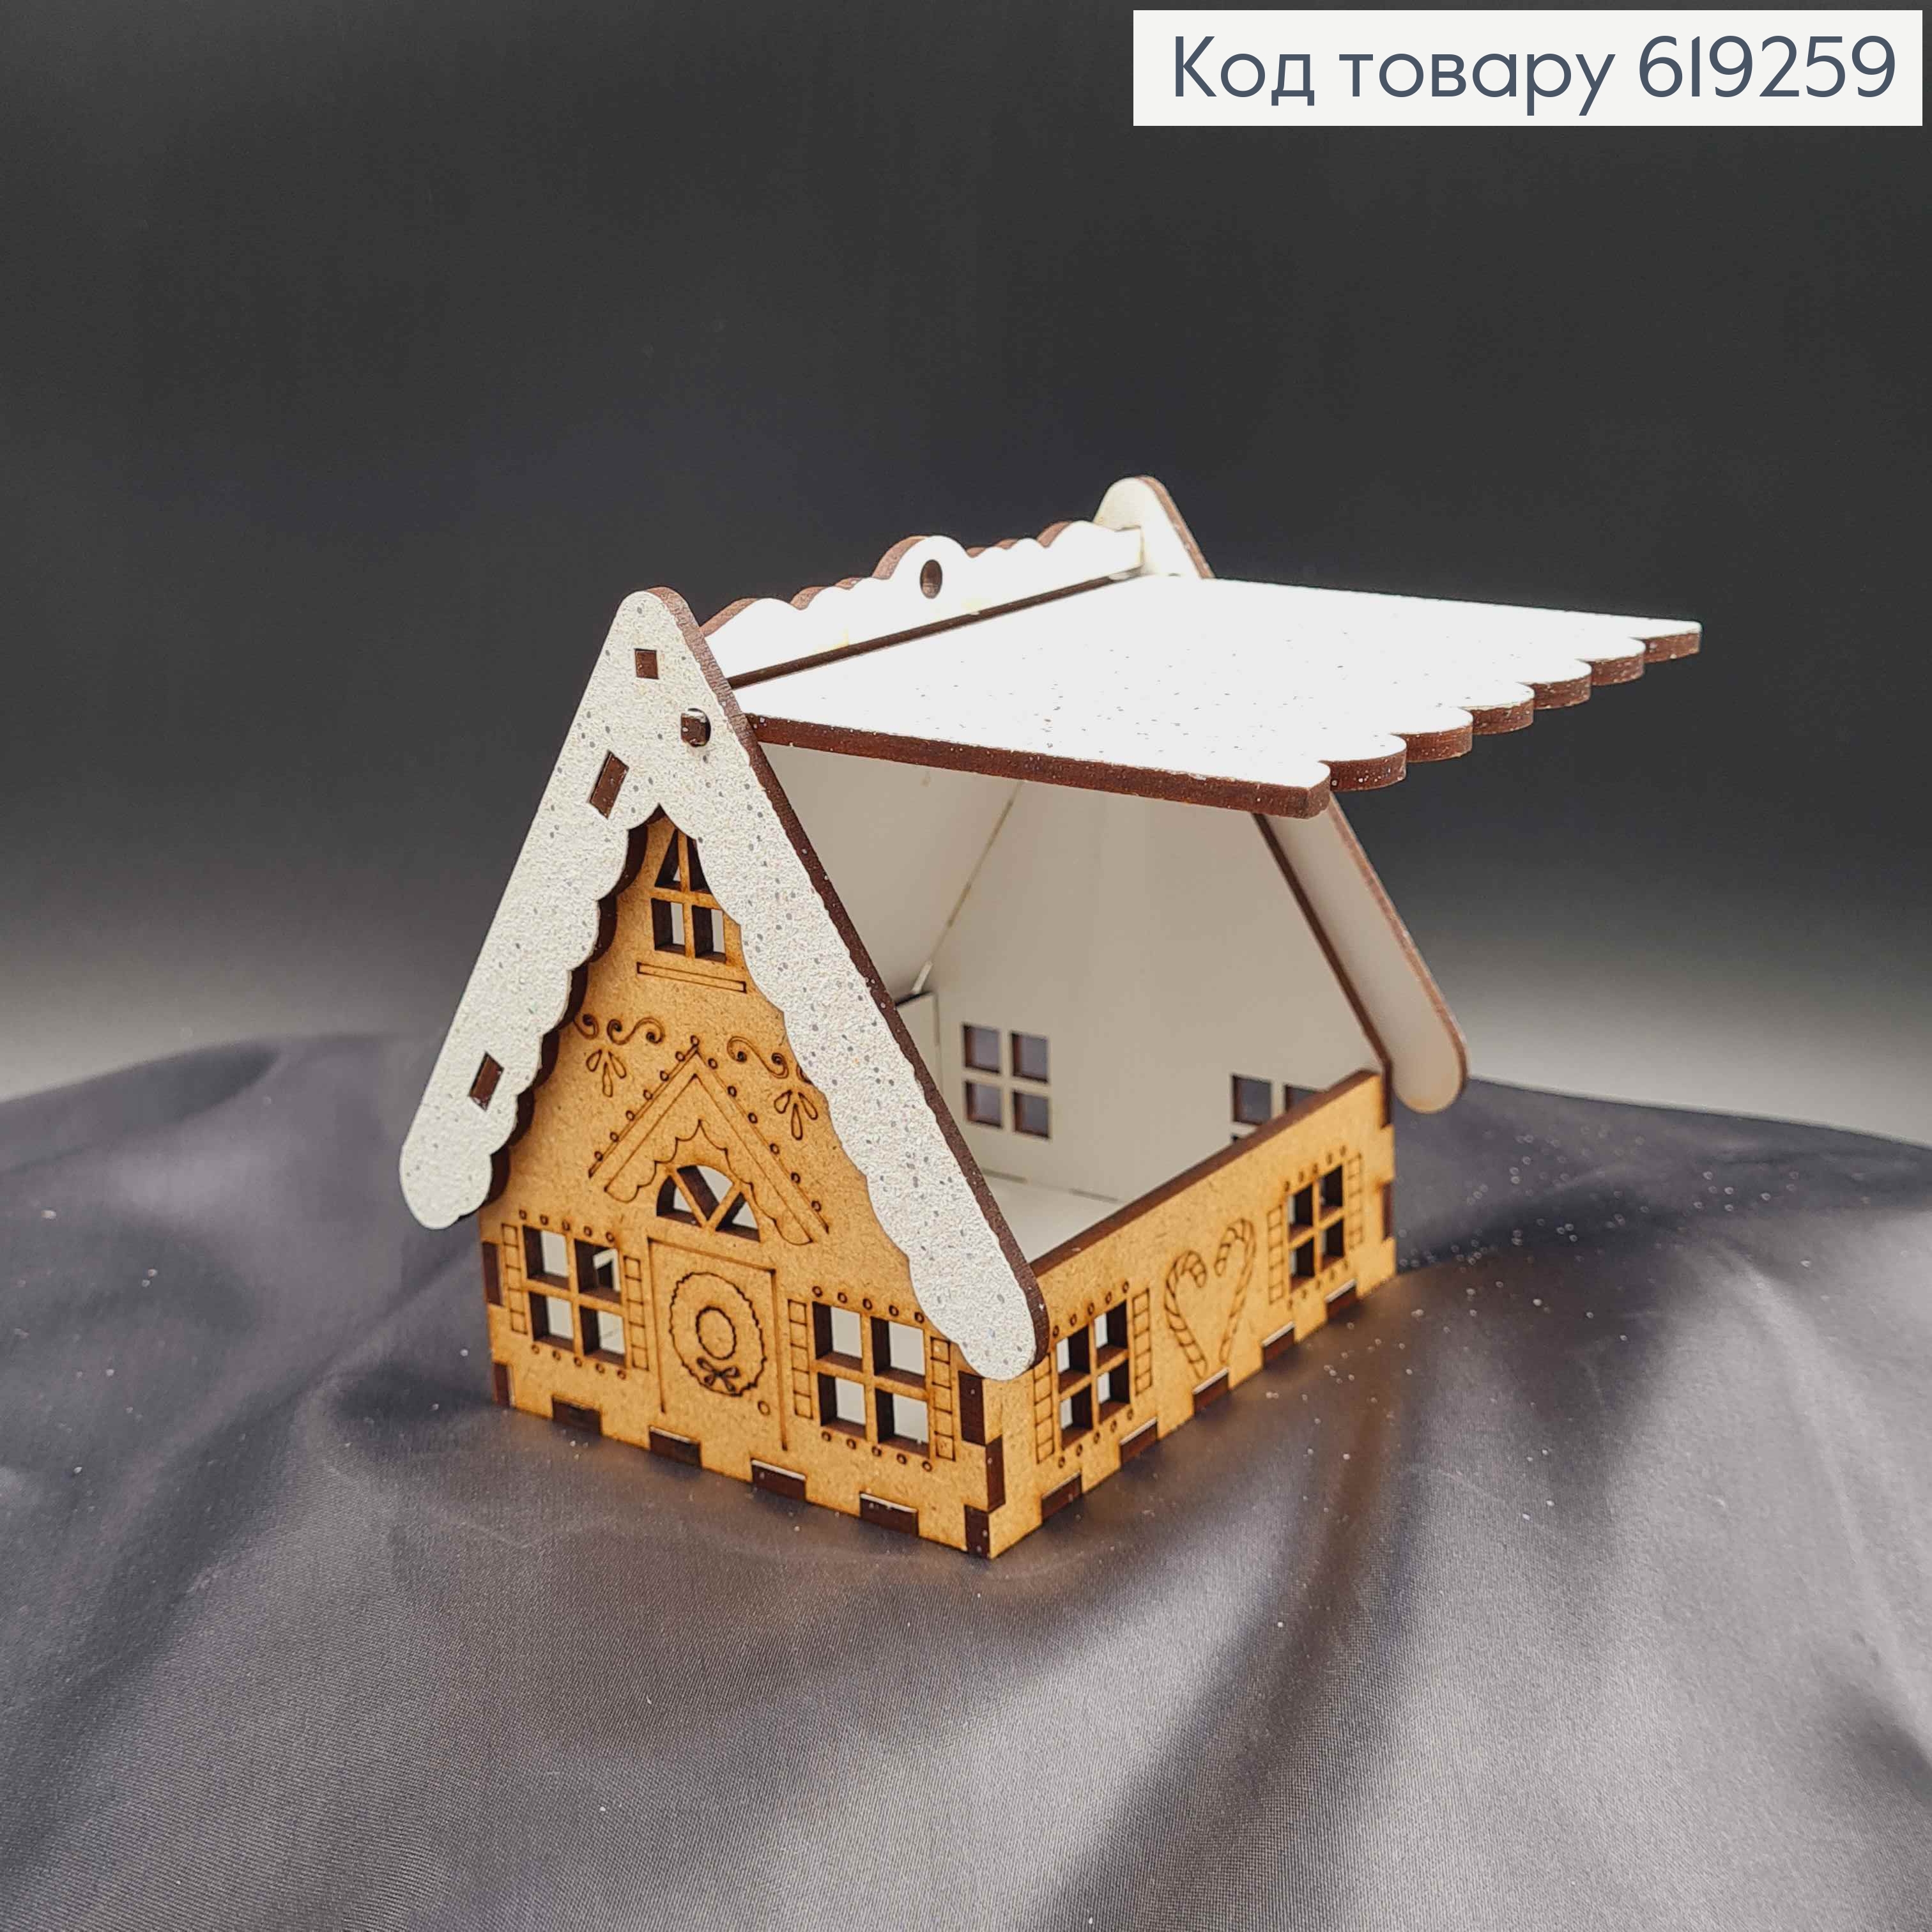 Будинок дерев'яний з візерунком, дах в блискітках та відкривається, 9,5*10см, Україна 619259 фото 2